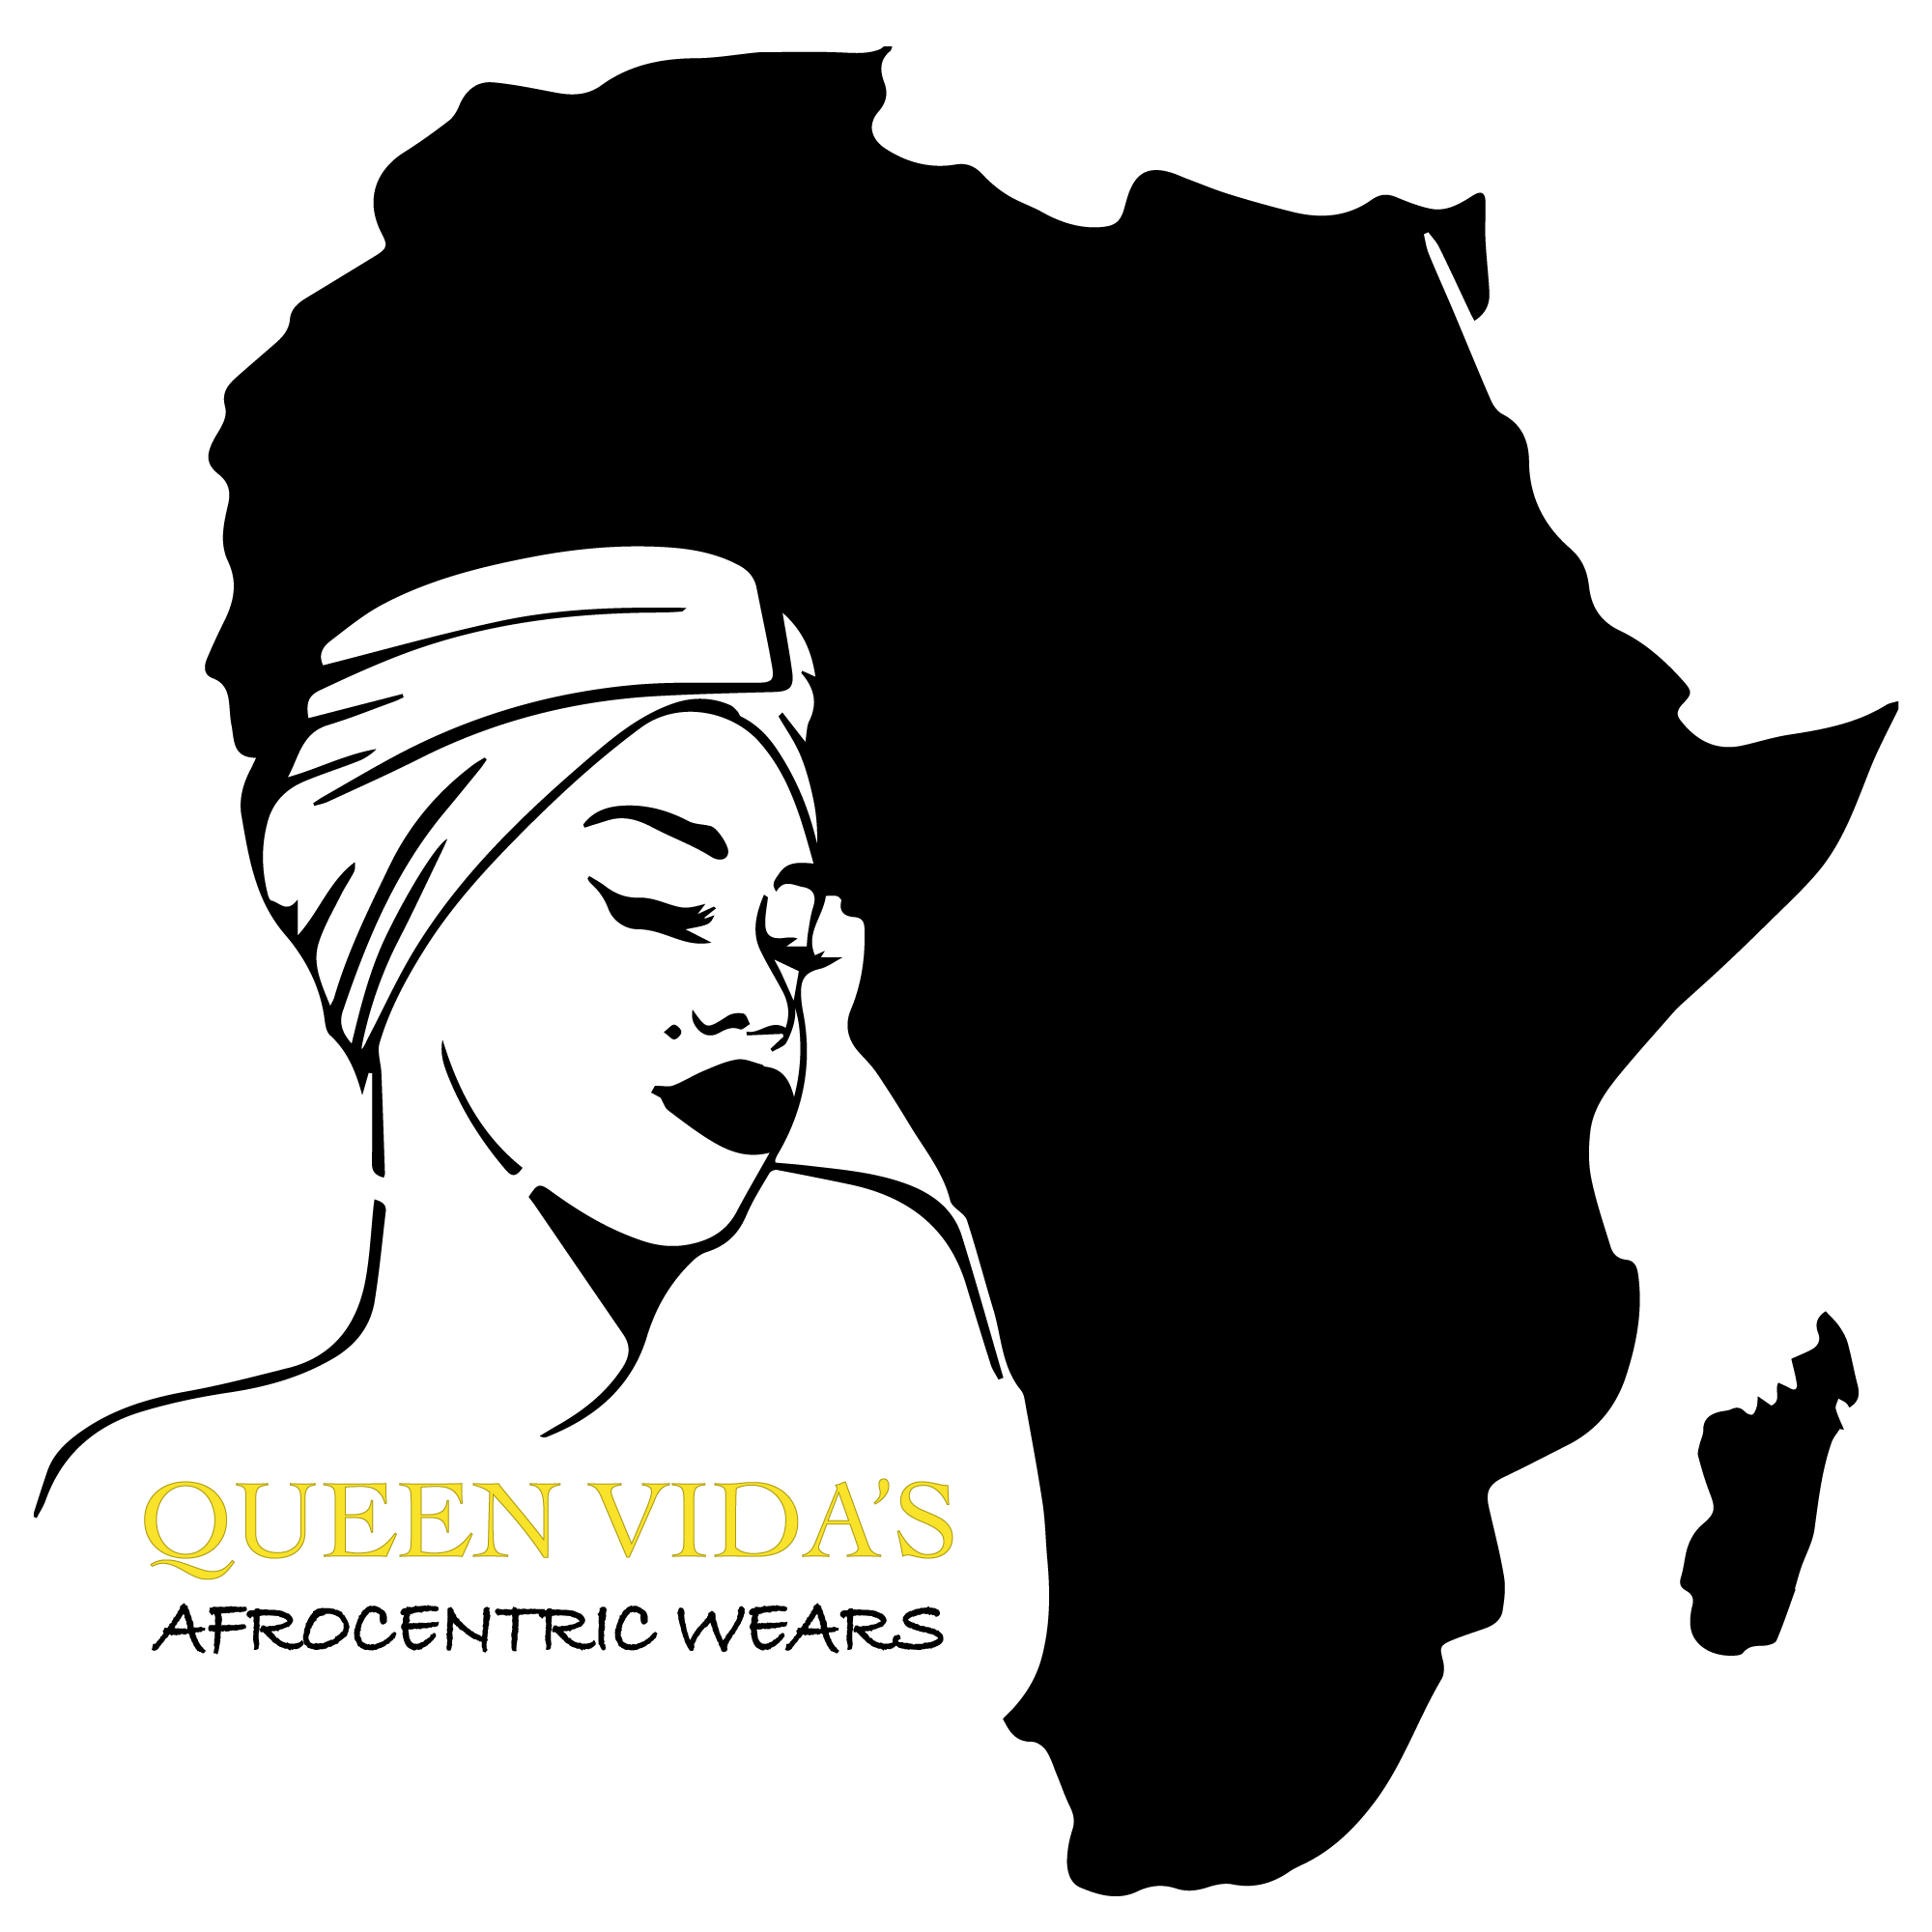 Queen-vida-logo (1).png